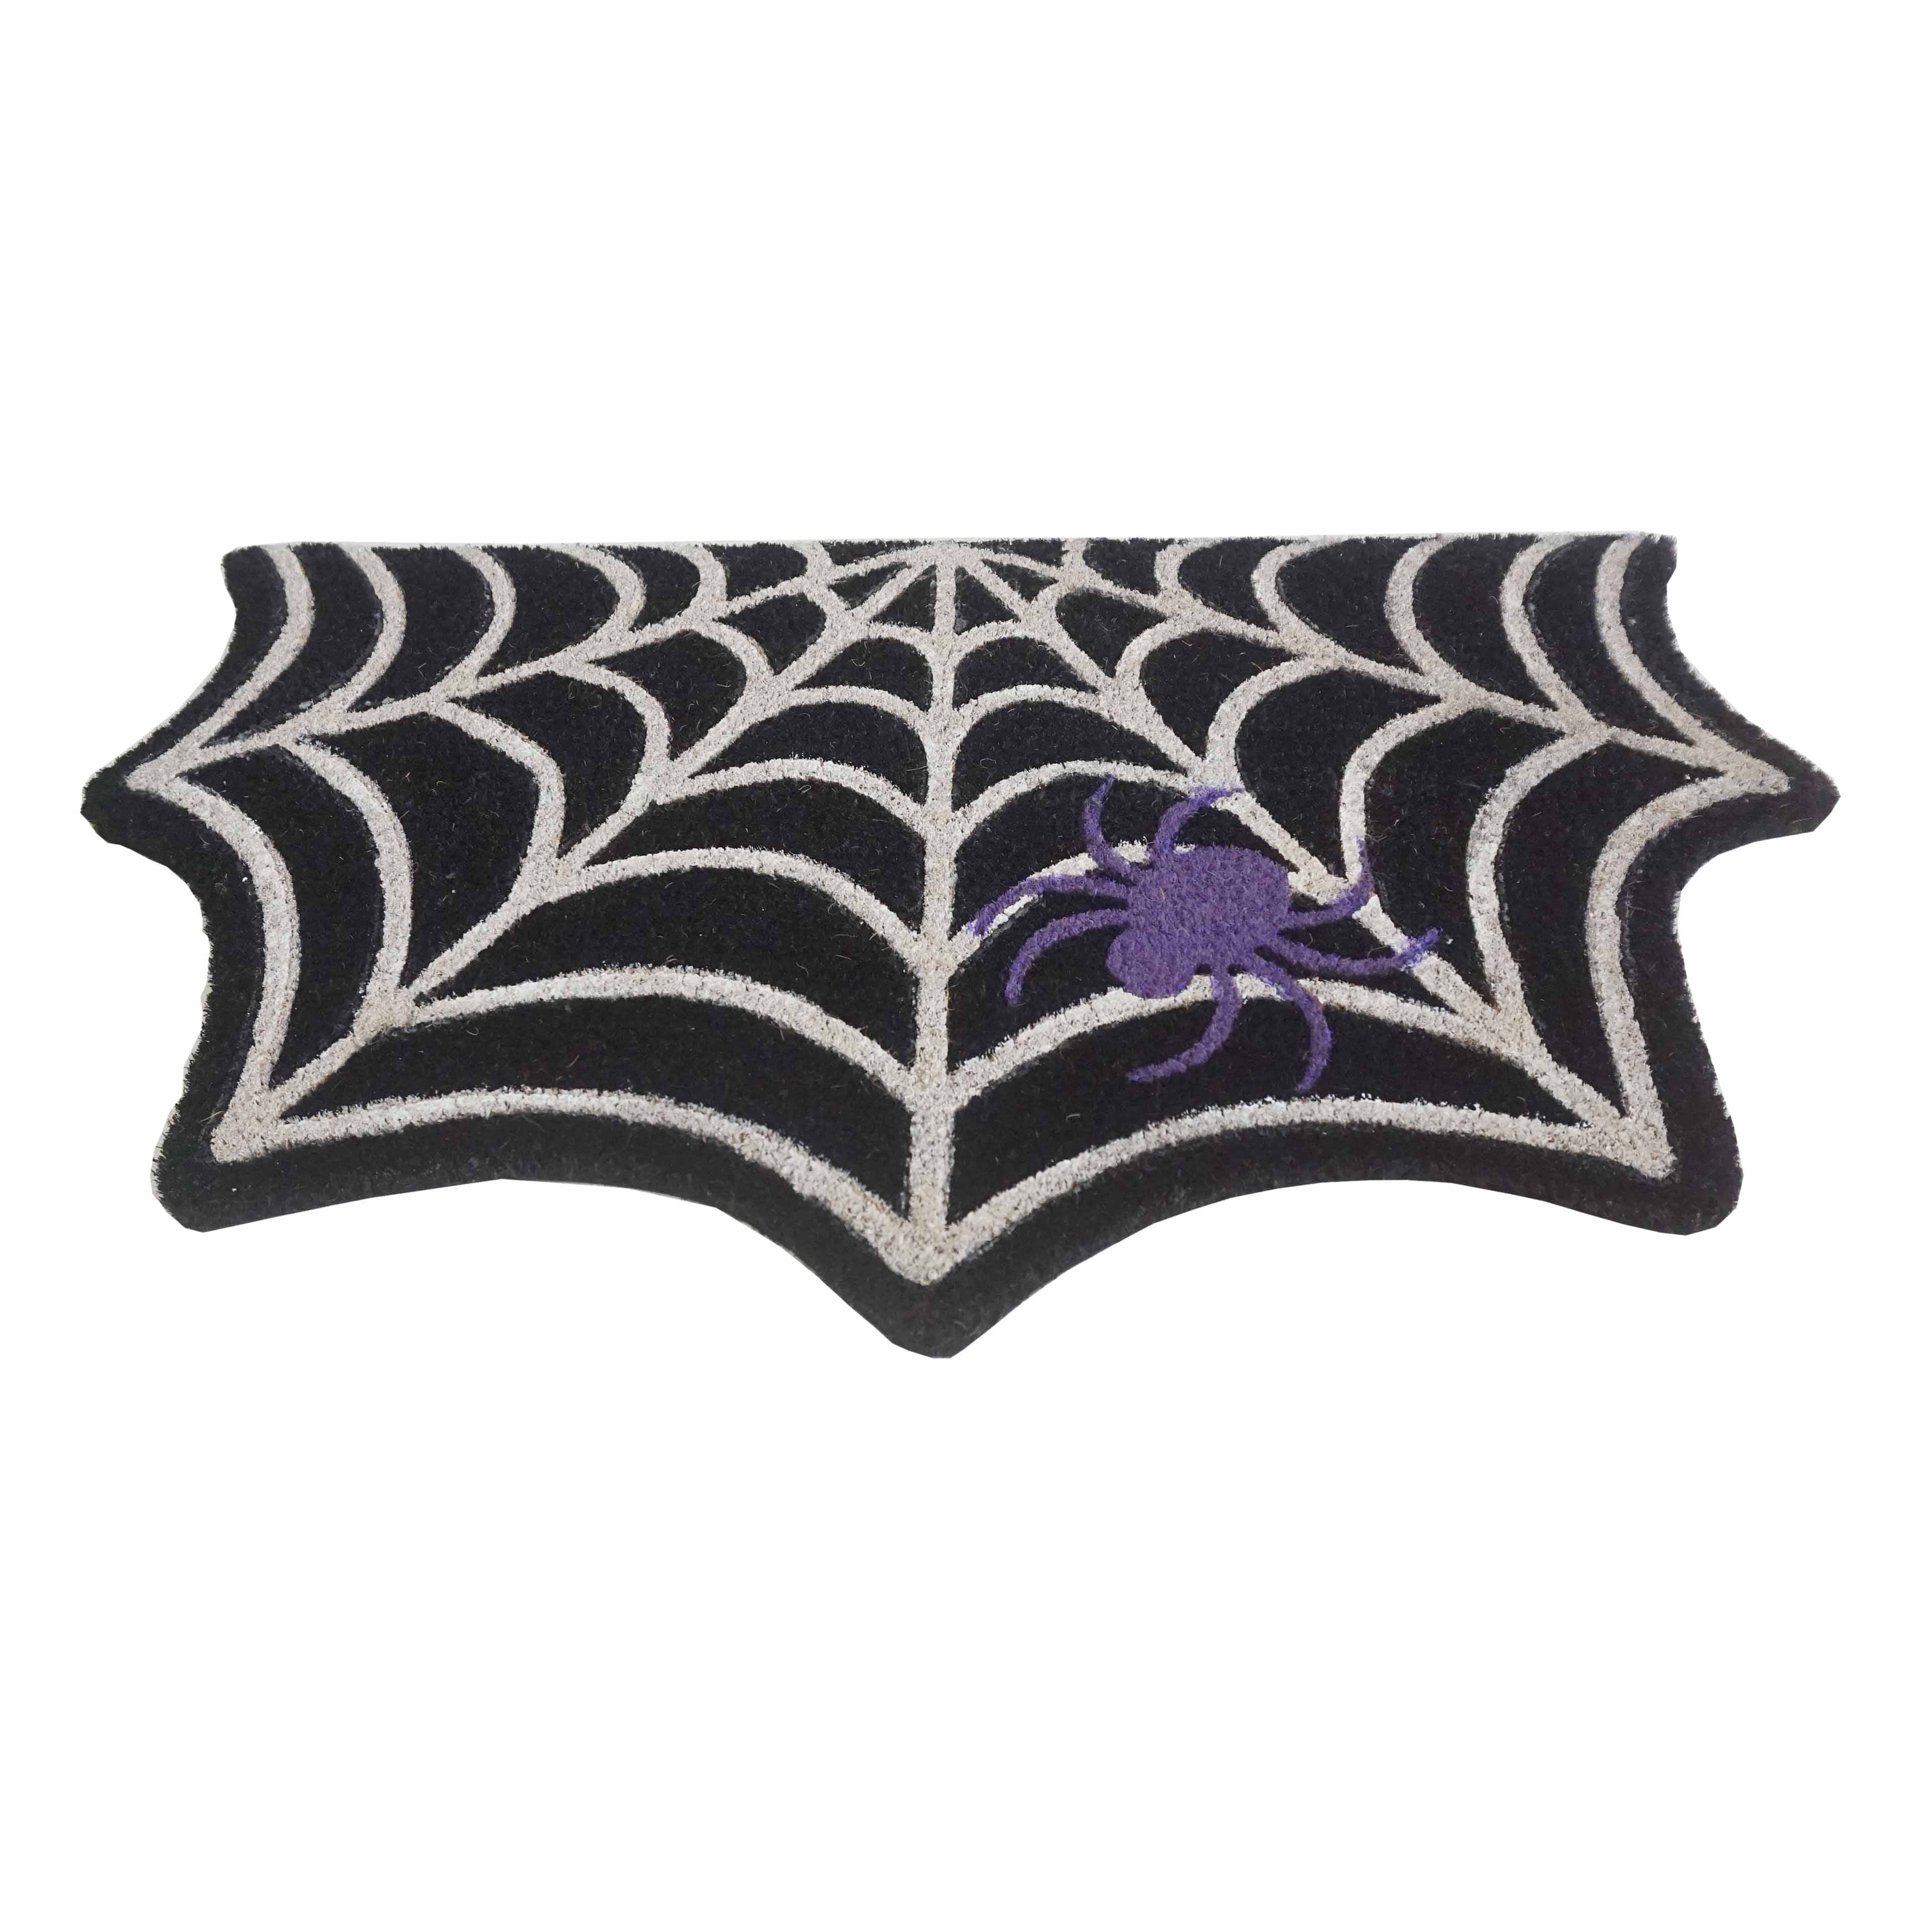 Glow in the Dark Spider Web Doormat by Ashland&#xAE;